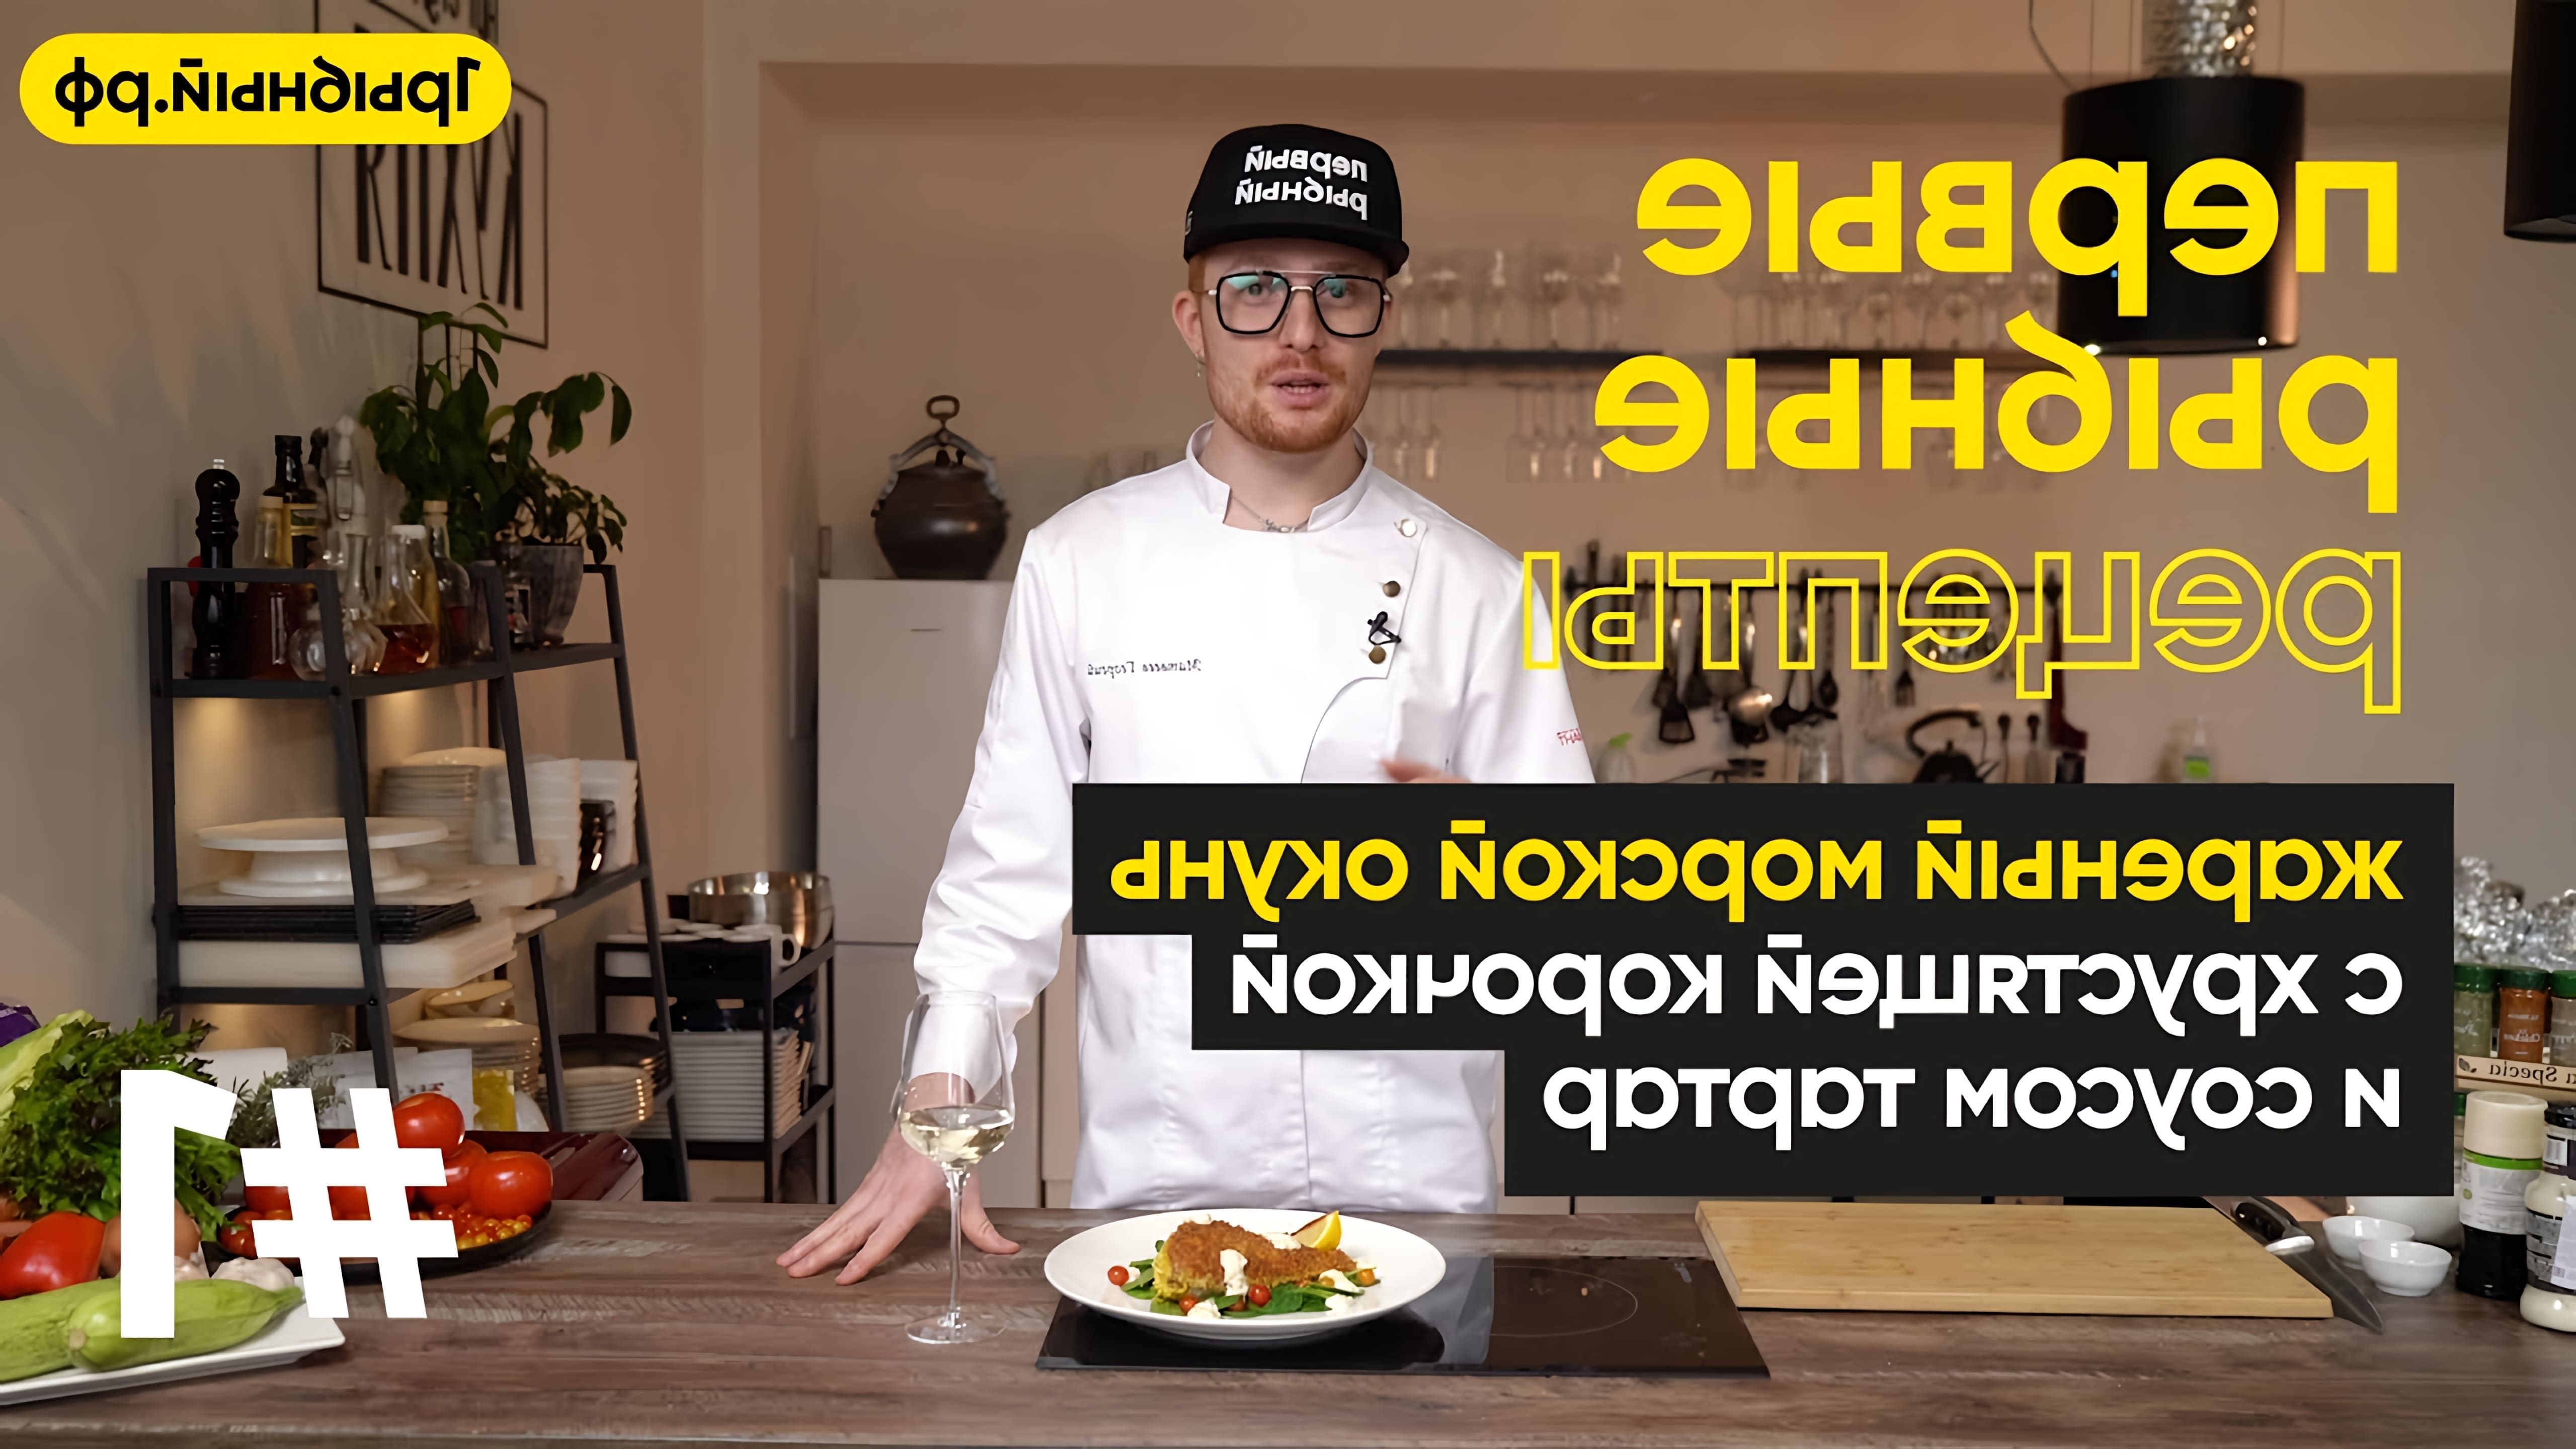 В этом видео Георгий Матвеев, шеф-повар и идейный вдохновитель кулинарной арт-студии "Кухня", готовит жареного морского окуня с хрустящей корочкой и соусом тартар